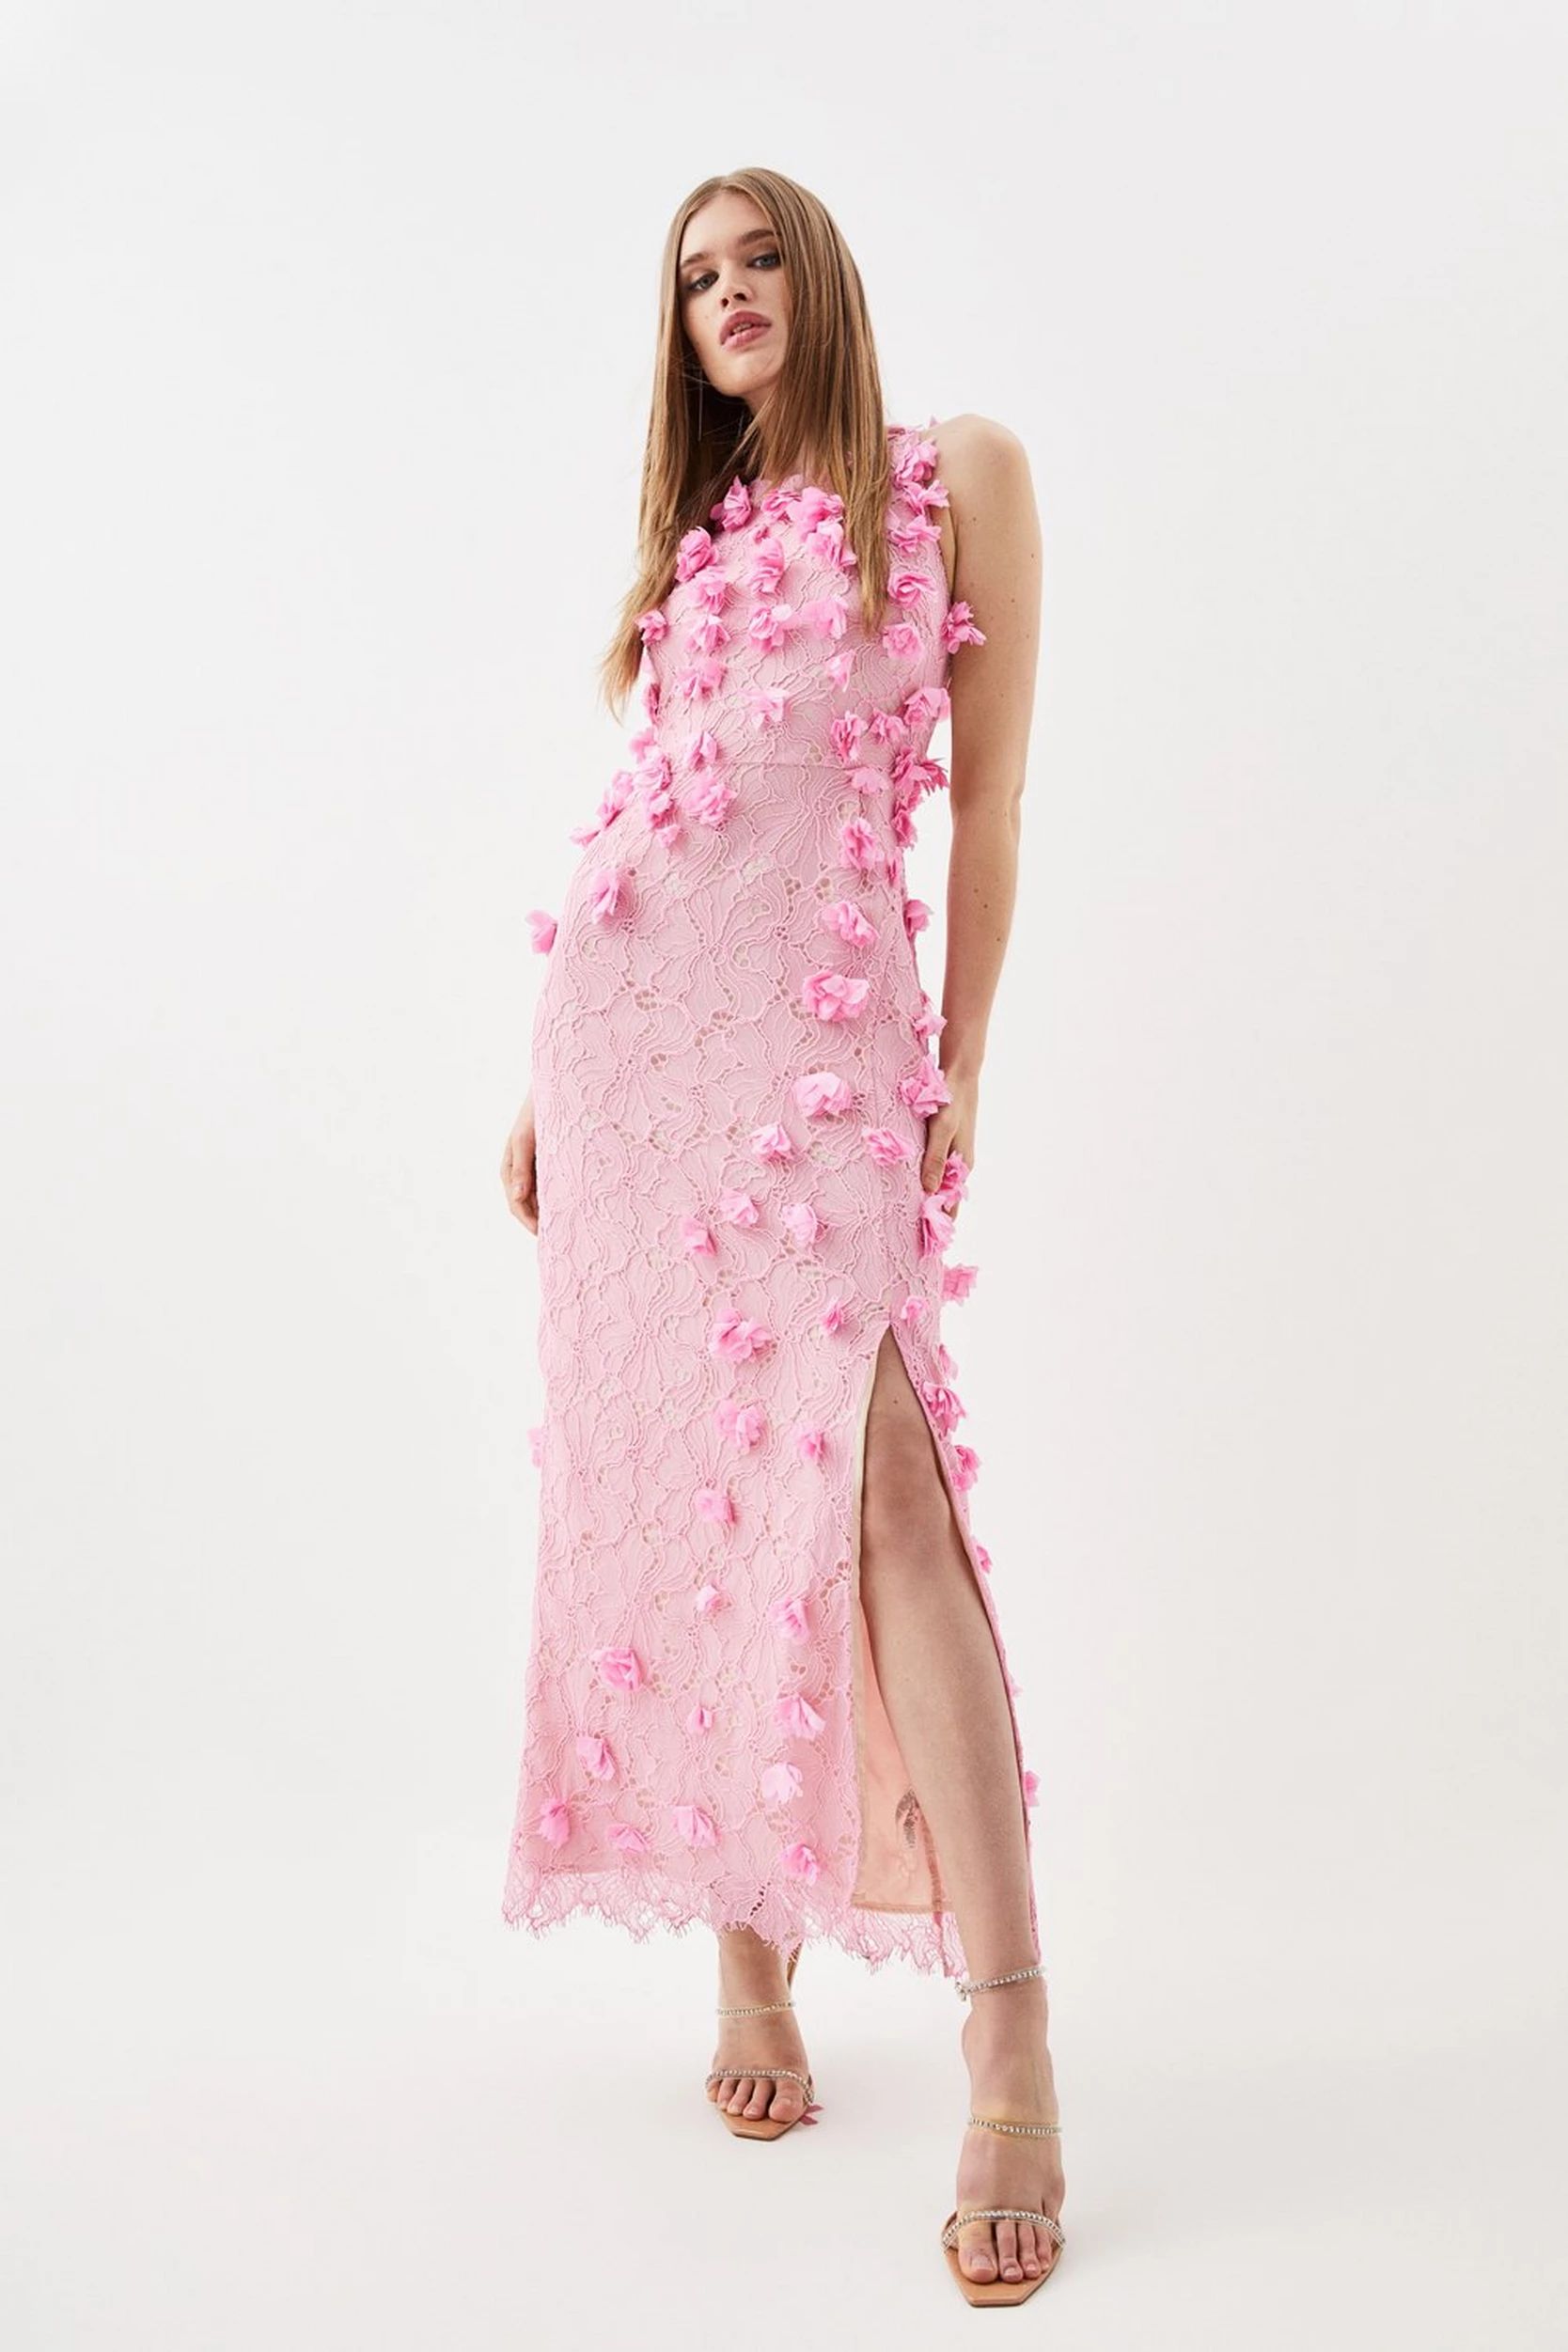 Floral Applique On Lace Woven Midi Dress | Karen Millen US